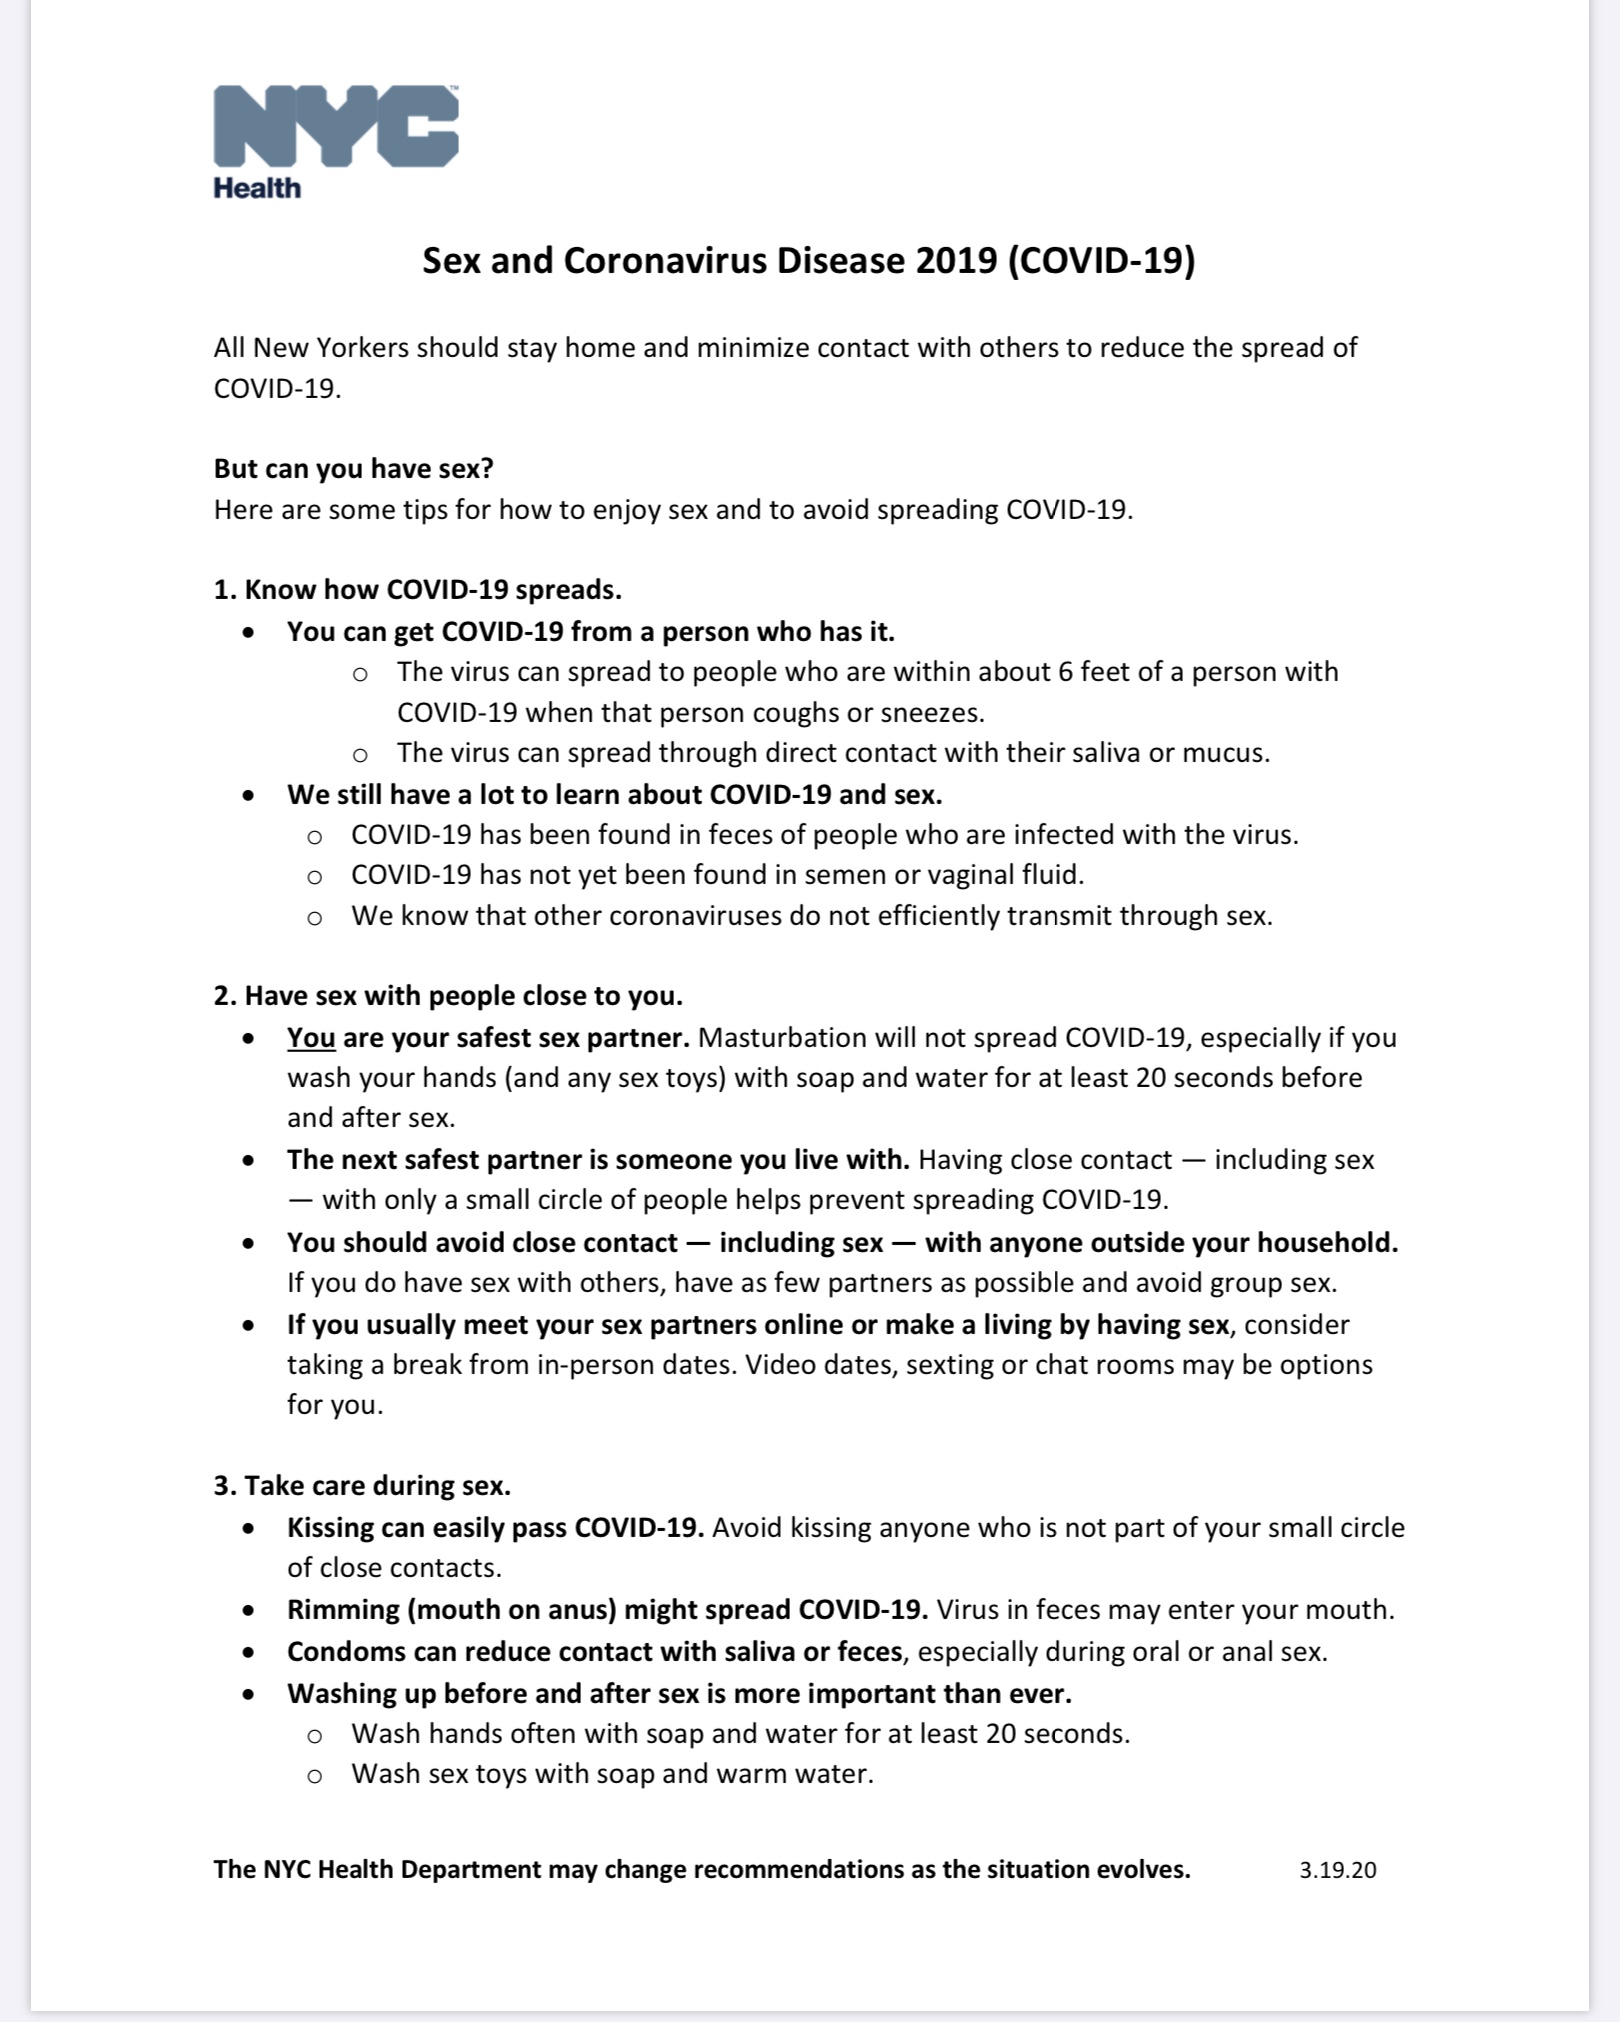 New York City Health Department’s “Sex and Coronavirus” Guide